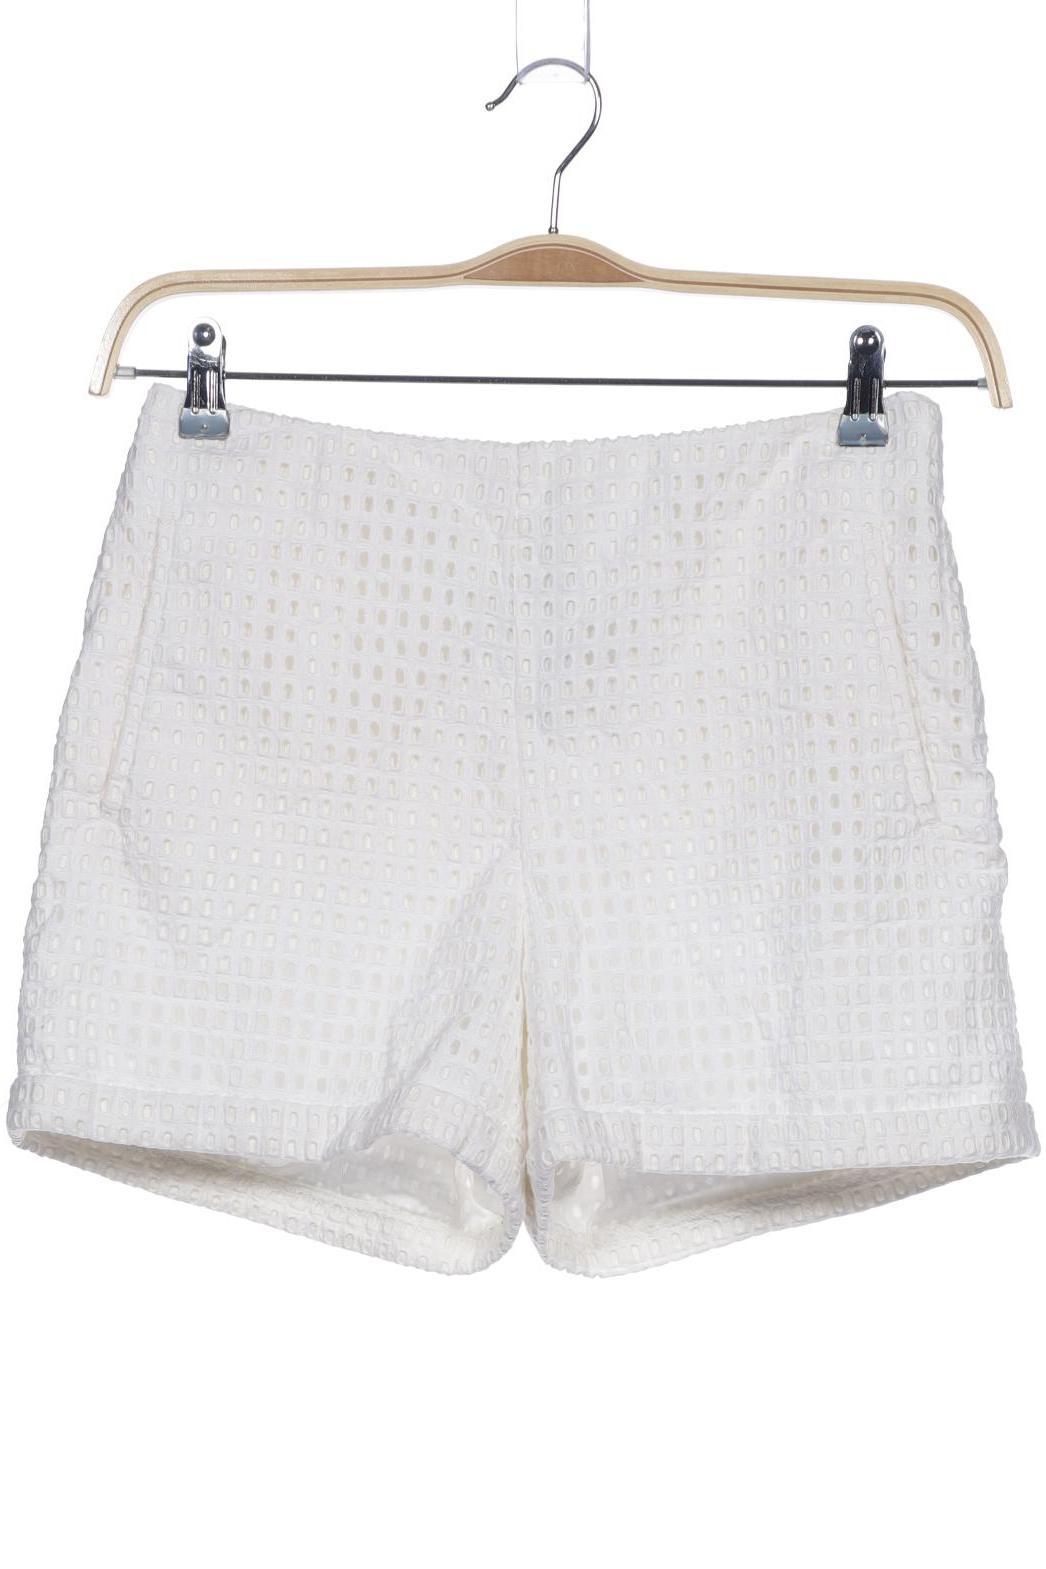 H&M Damen Shorts, weiß, Gr. 38 von H&M